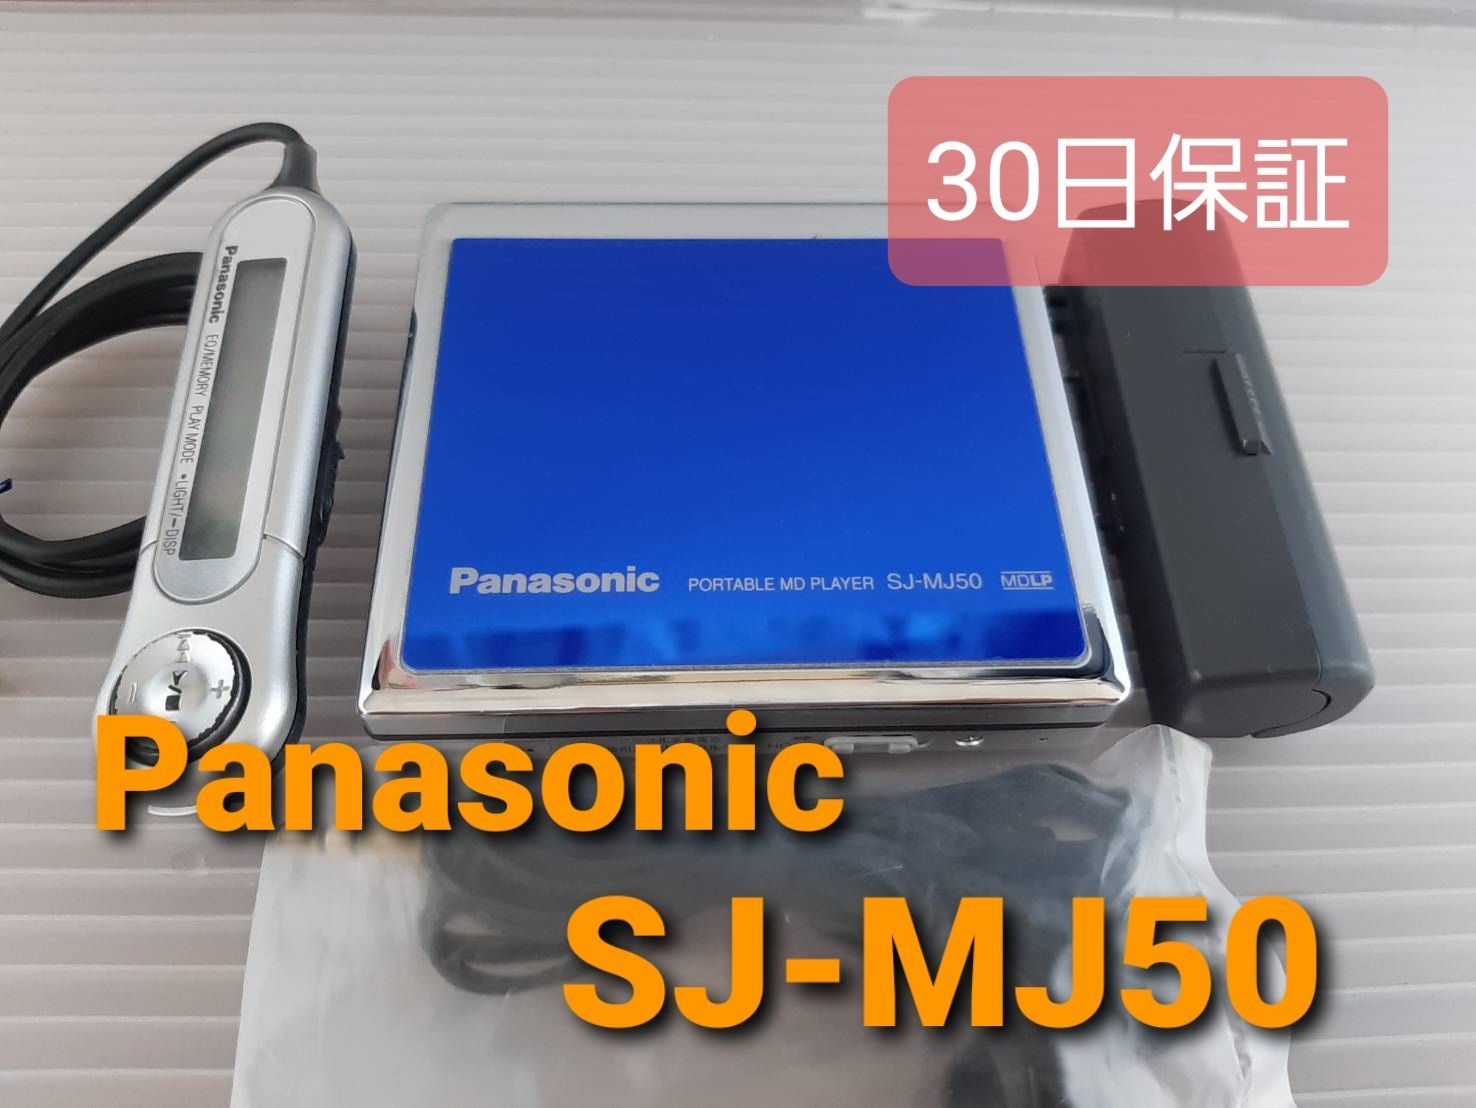 Panasonic ポータブルMDプレイヤー SJ-MJ50 最大82%OFFクーポン - ポータブルプレーヤー